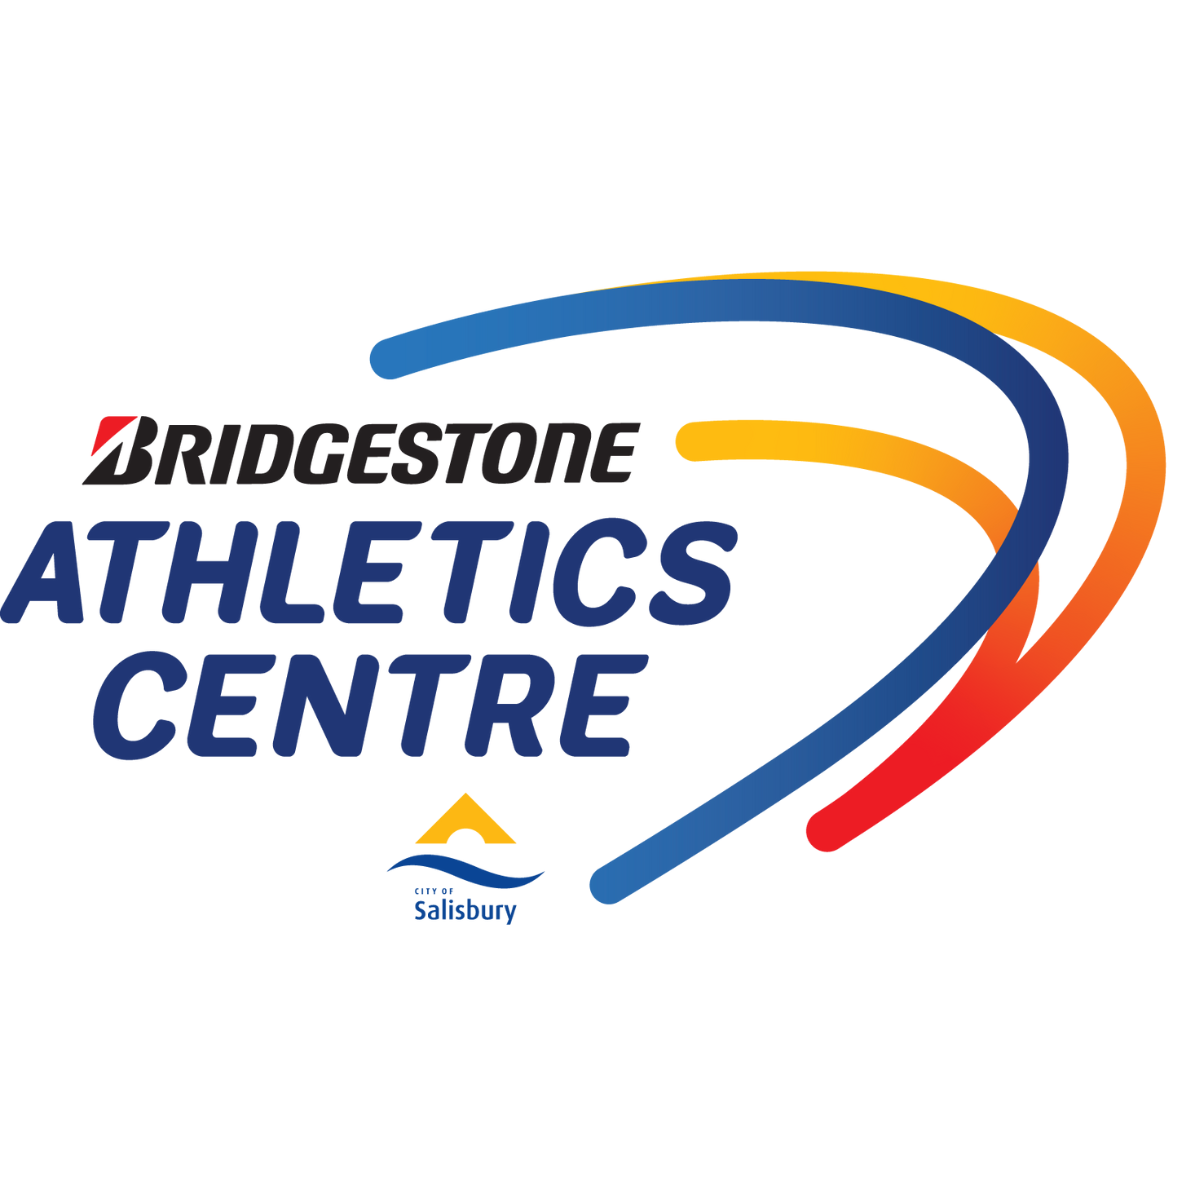 Bridgestone Athletic Centre